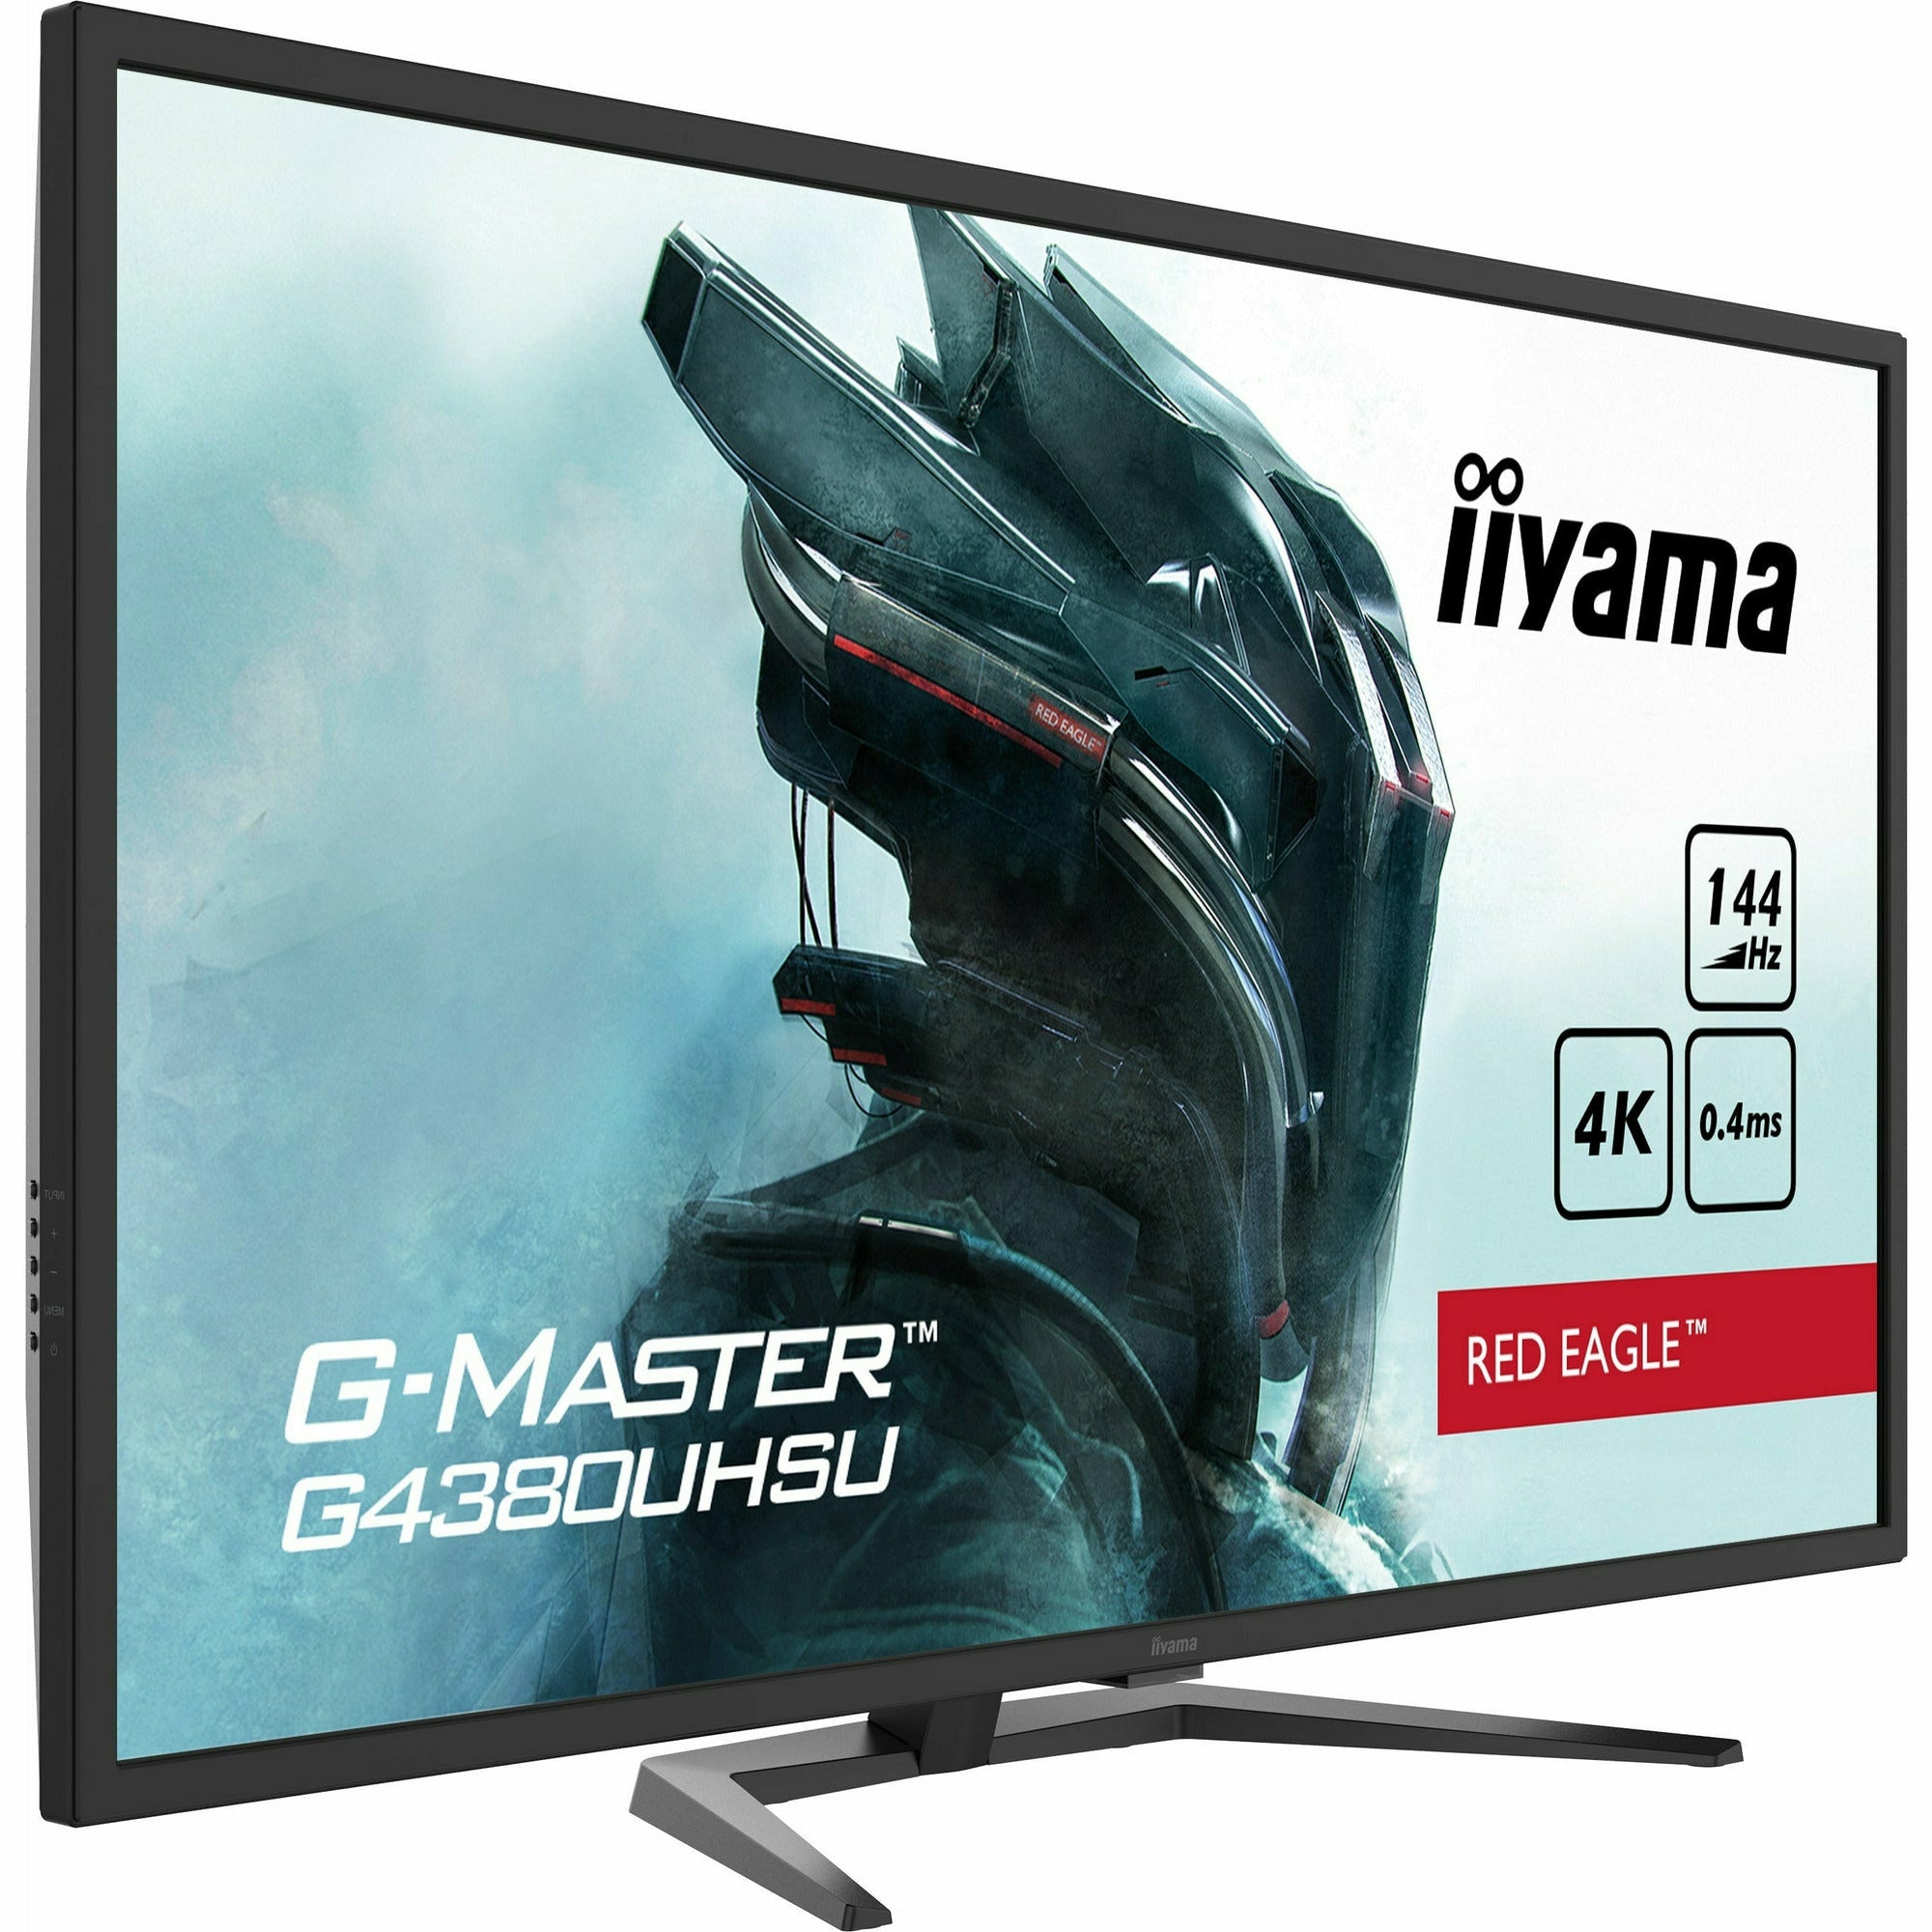 iiyama G-Master G4380UHSU-B1 43" VA LCD Gaming Monitor